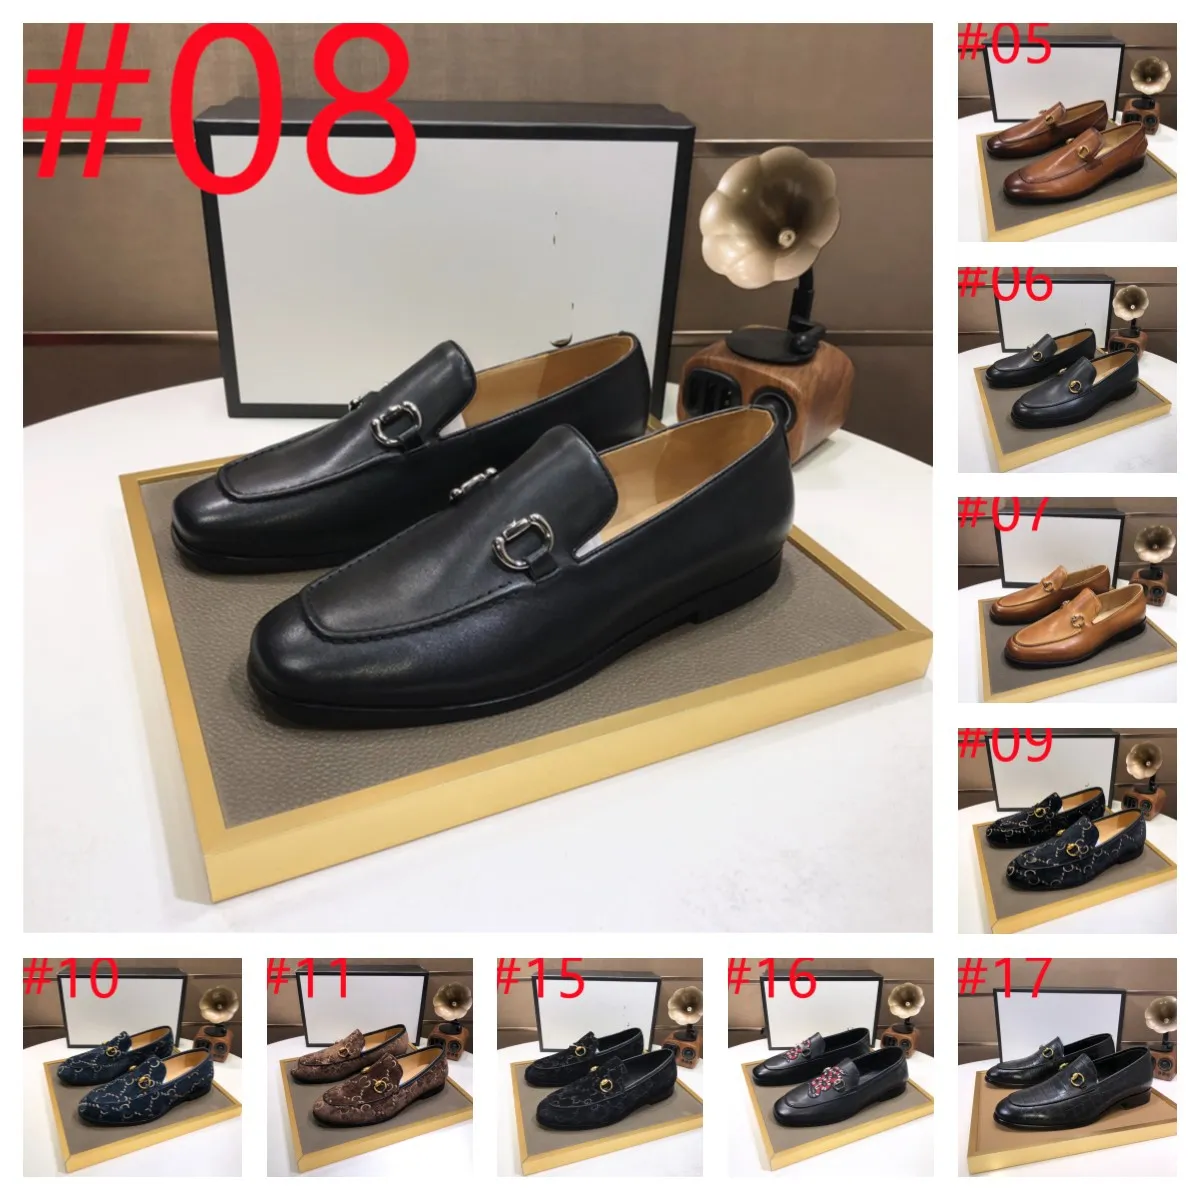 63 Style Sladers Männer Leder Patchwork geprägte Lederschuhe mit Hufeisenschnalle Dekoration Business Designer Kleid Schuhe Modmen Eins Schuhe Einzelschuhe